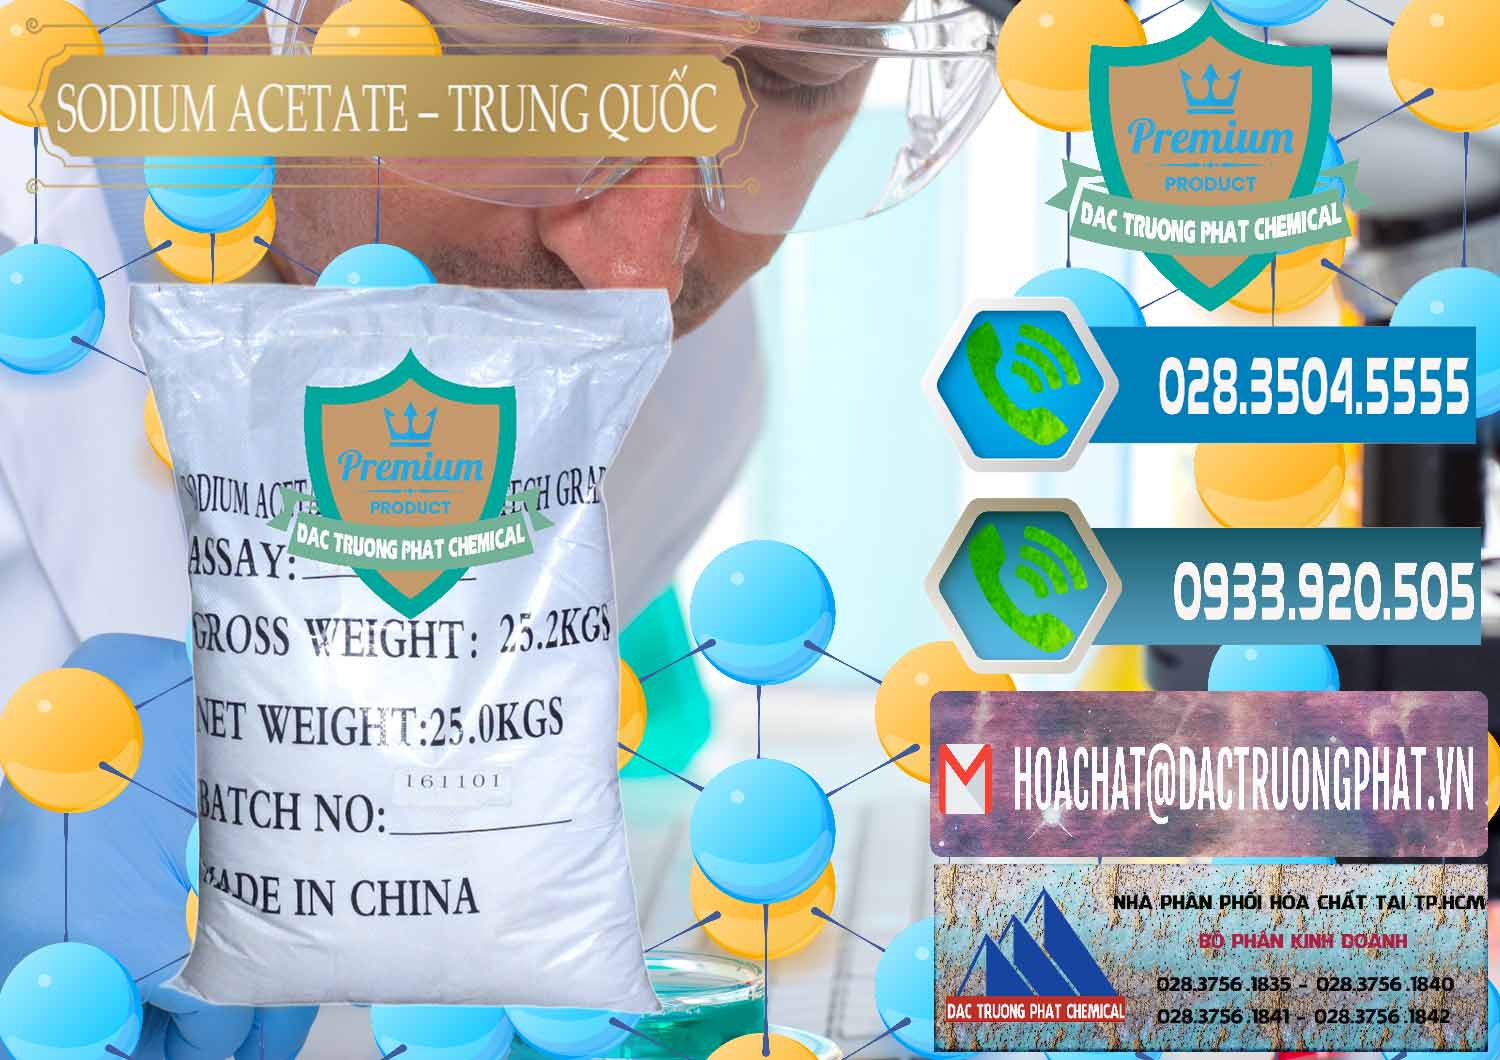 Nơi chuyên kinh doanh & bán Sodium Acetate - Natri Acetate Trung Quốc China - 0134 - Cty phân phối ( bán ) hóa chất tại TP.HCM - congtyhoachat.net